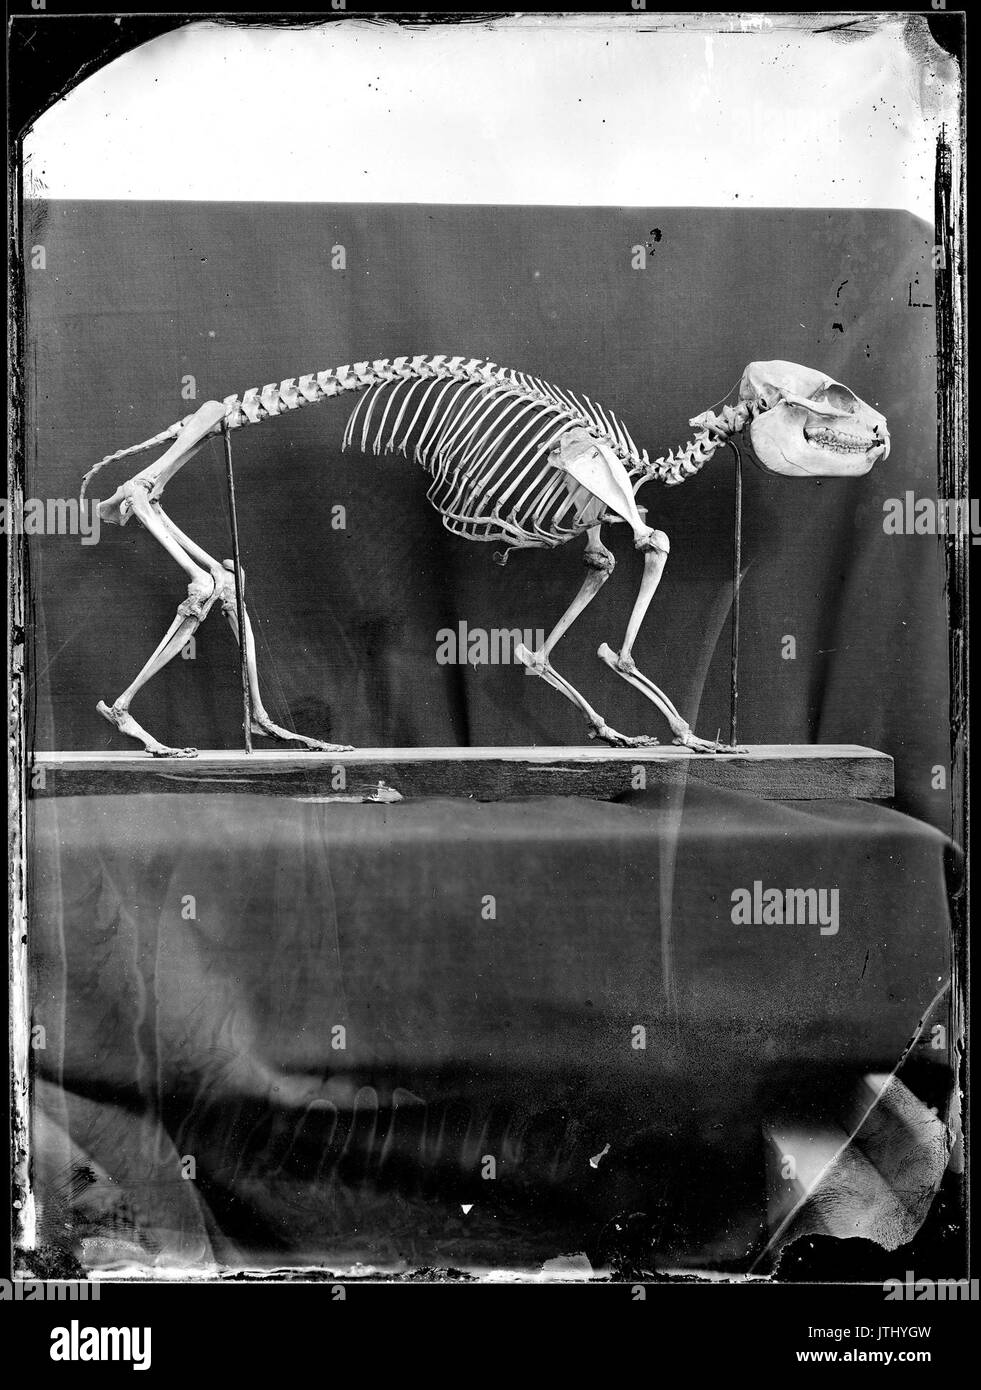 Squelette complet de daman des rochers   Fonds Trutat   MHNT.PHa.1824.06.003 Stock Photo